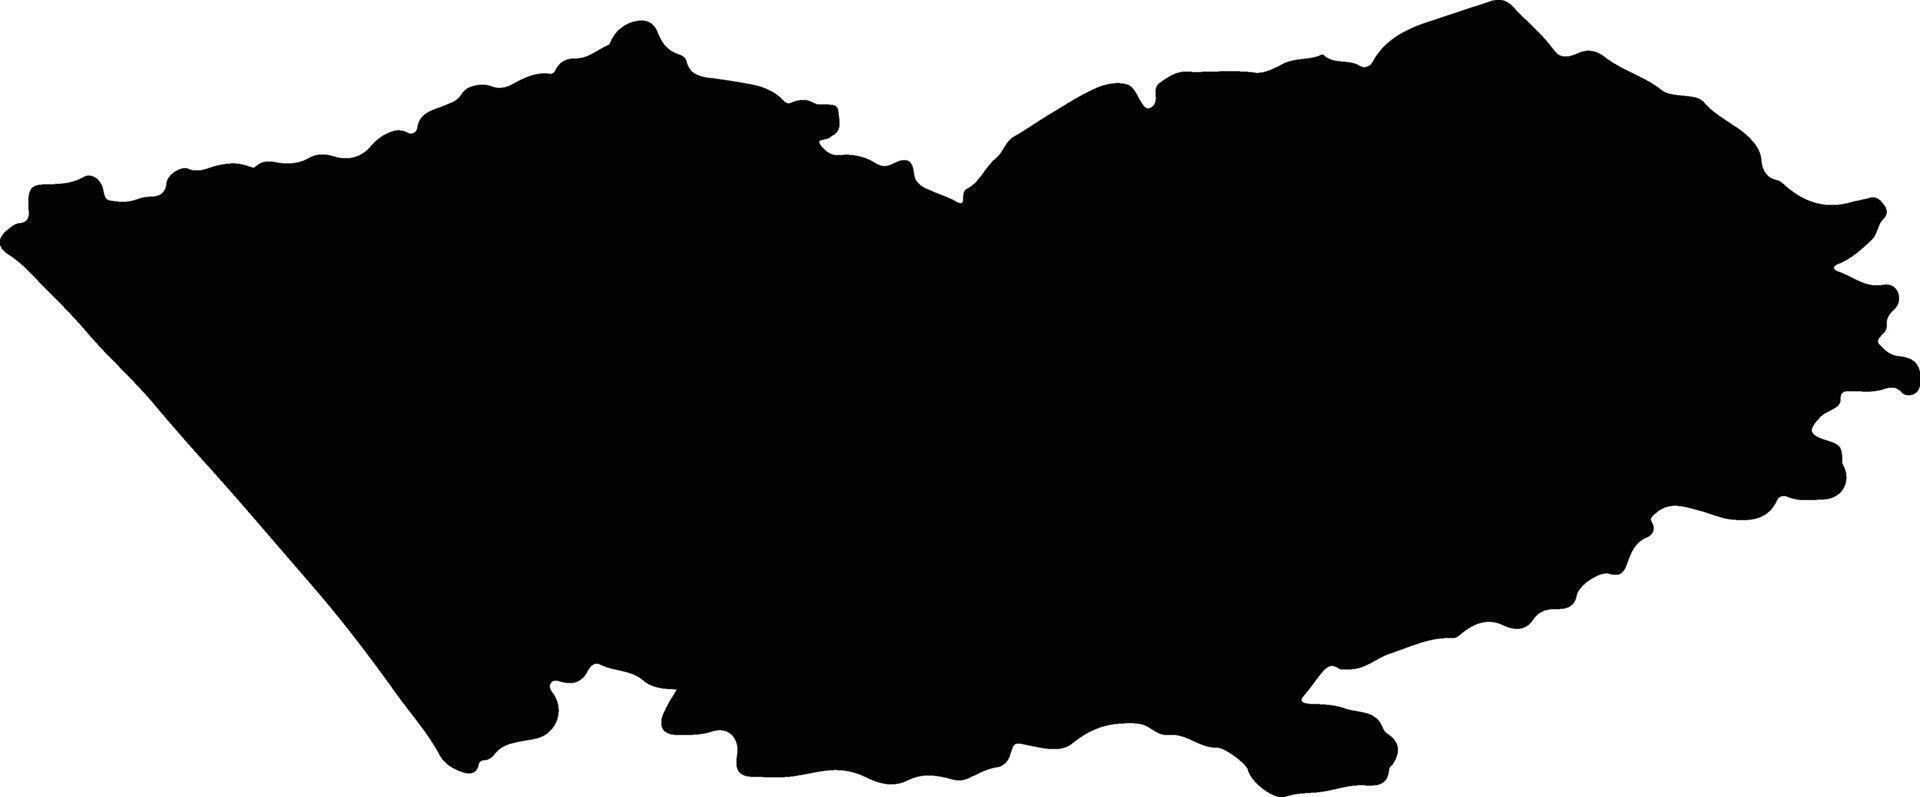 altay Russia silhouette carta geografica vettore